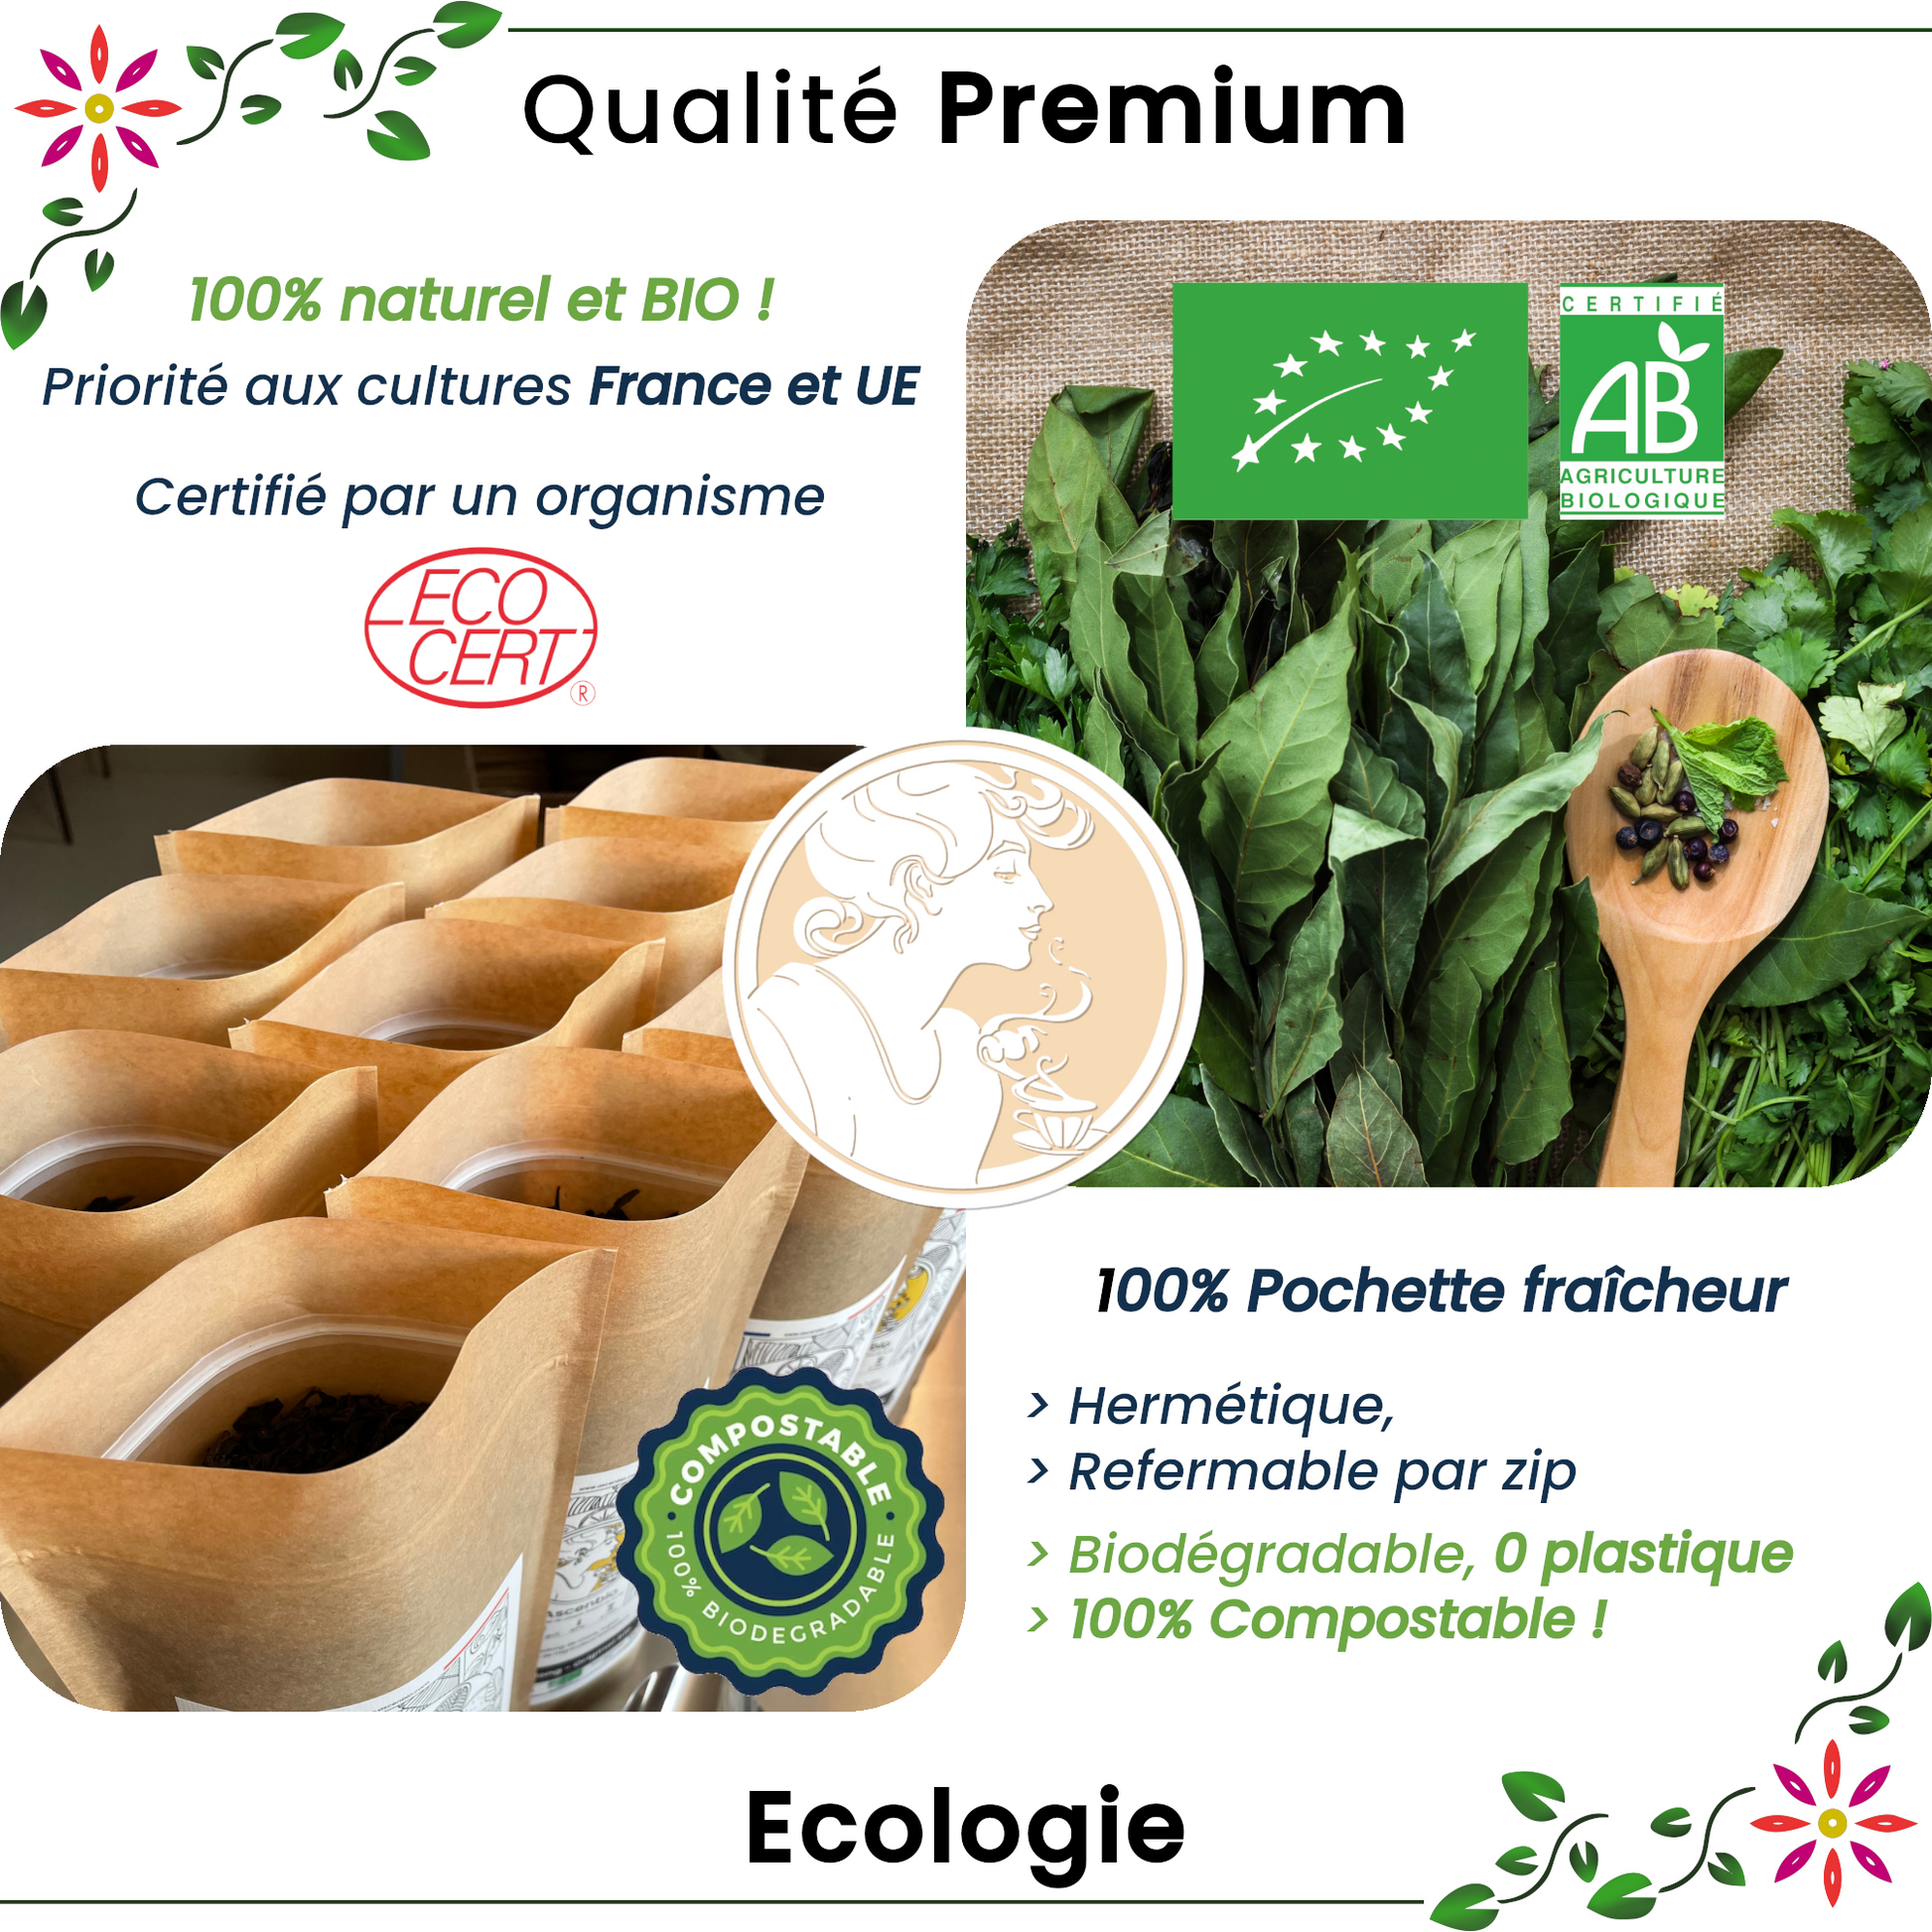 Les bienfaits des feuilles de framboisier - Malindo Blog - le N°1 du thé bio